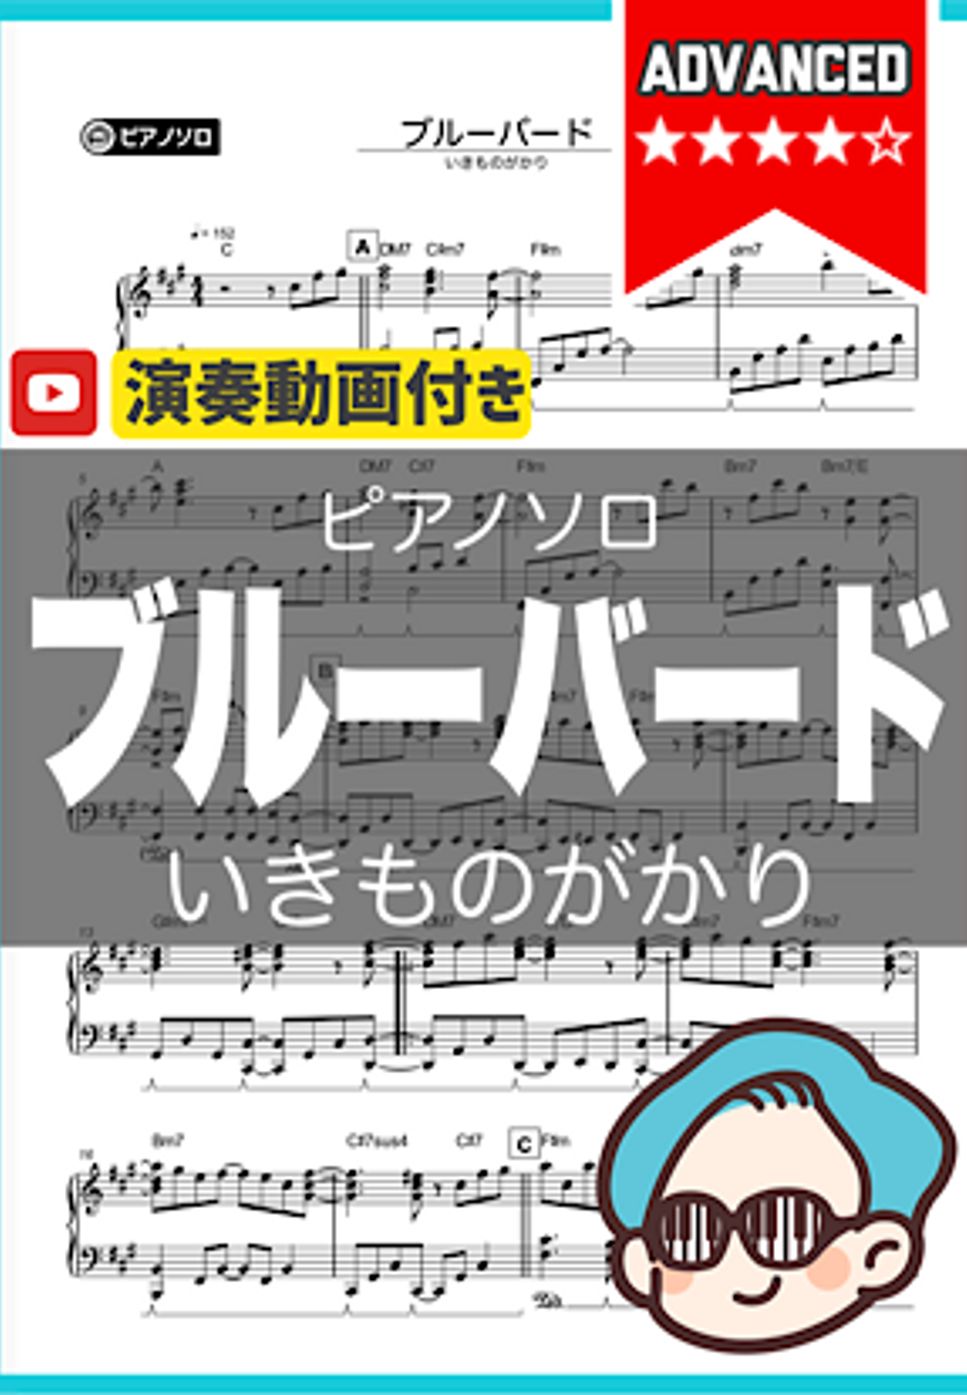 いきものがかり - ブルーバード by シータピアノ